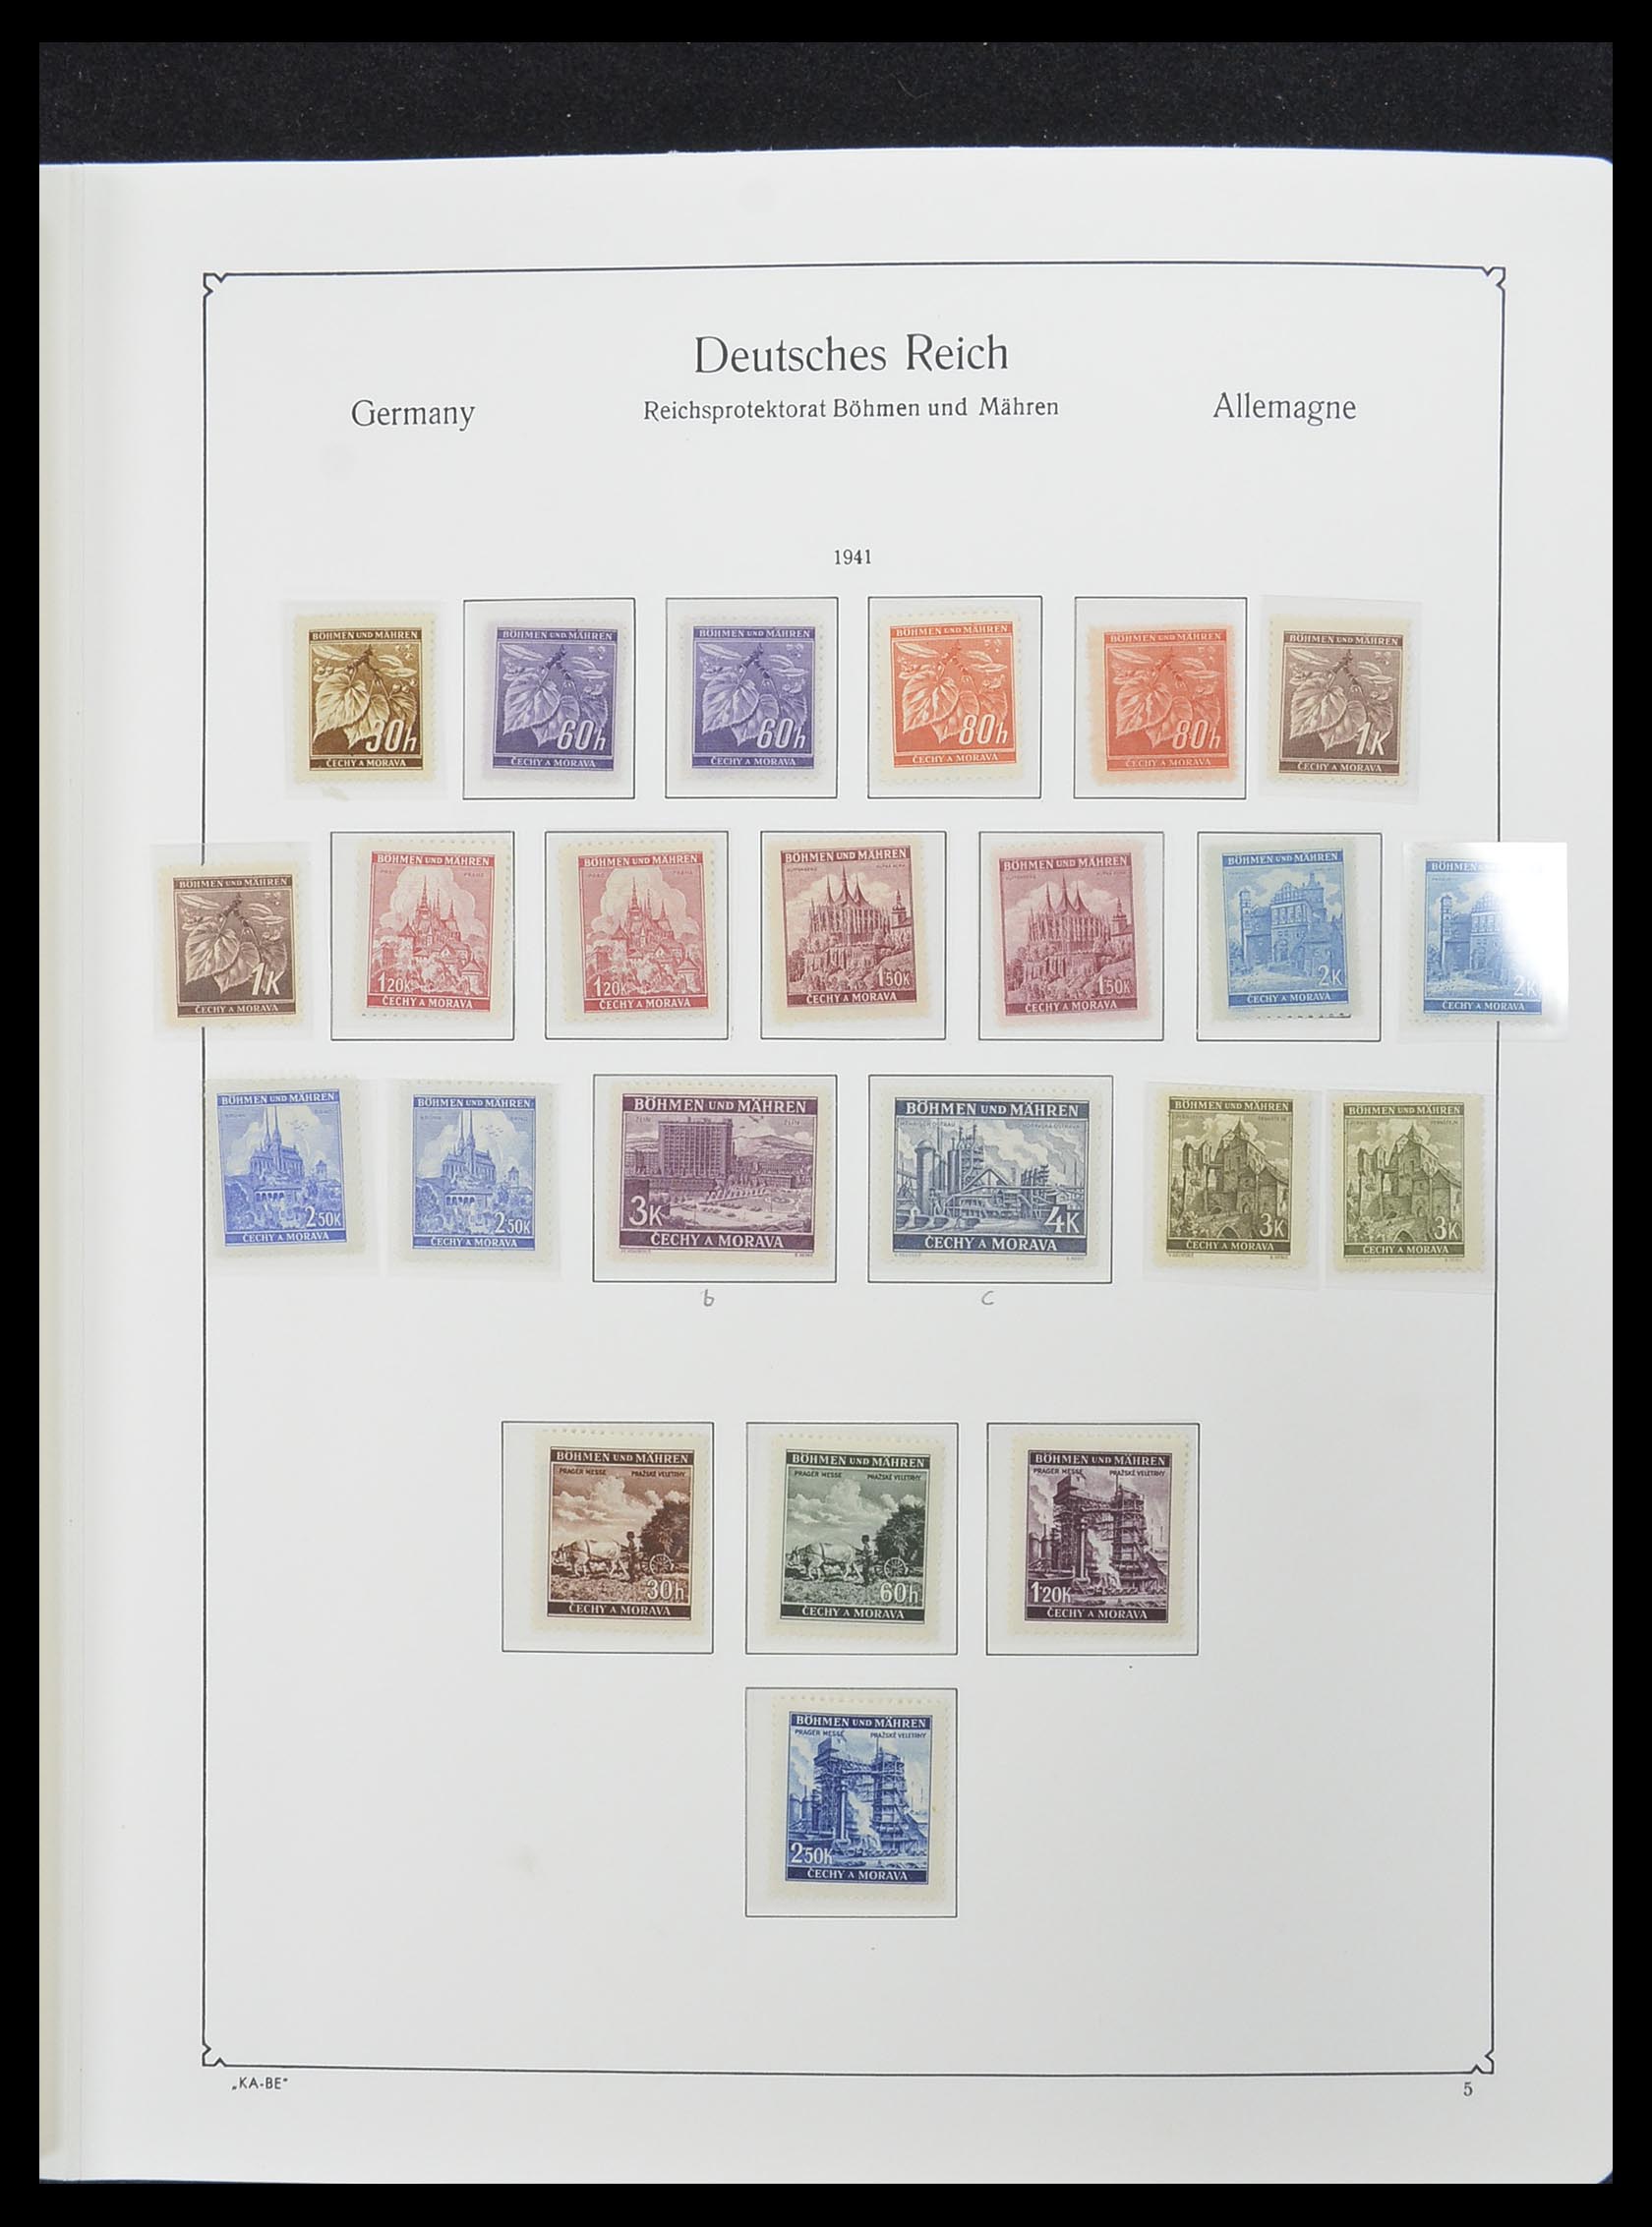 33360 007 - Stamp collection 33360 German occupation 2nd world war 1939-1945.